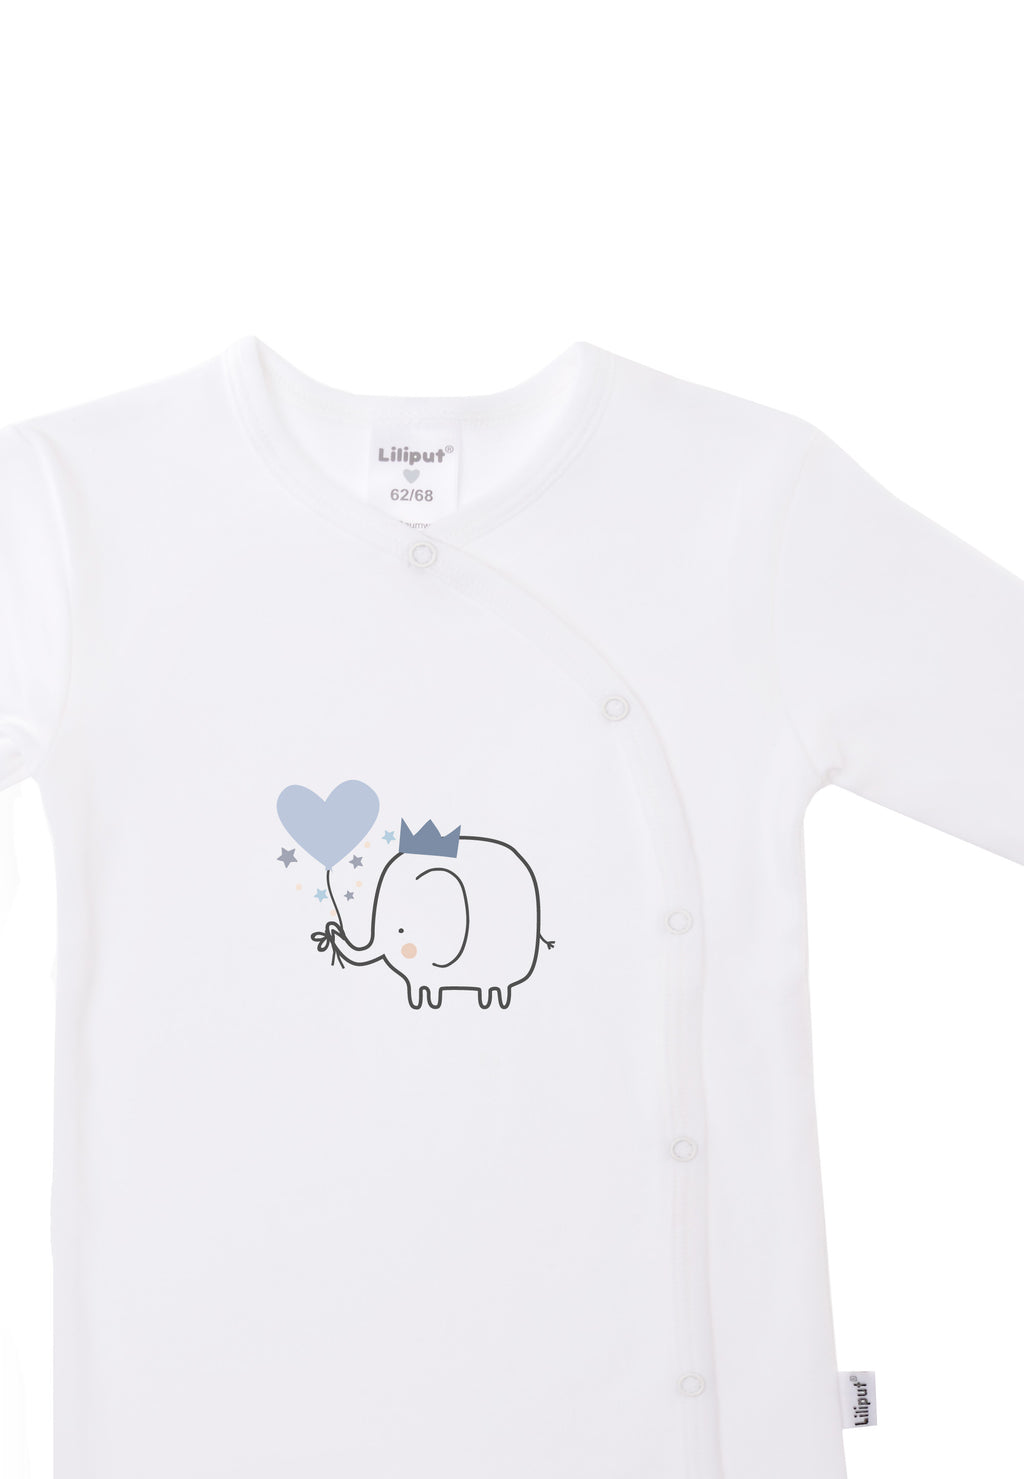 weißer Overall aus Bio Baumwolle mit niedlichem Elefanten Print und schräger Druckknopfleiste für ein einfaches An- und Ausziehen.